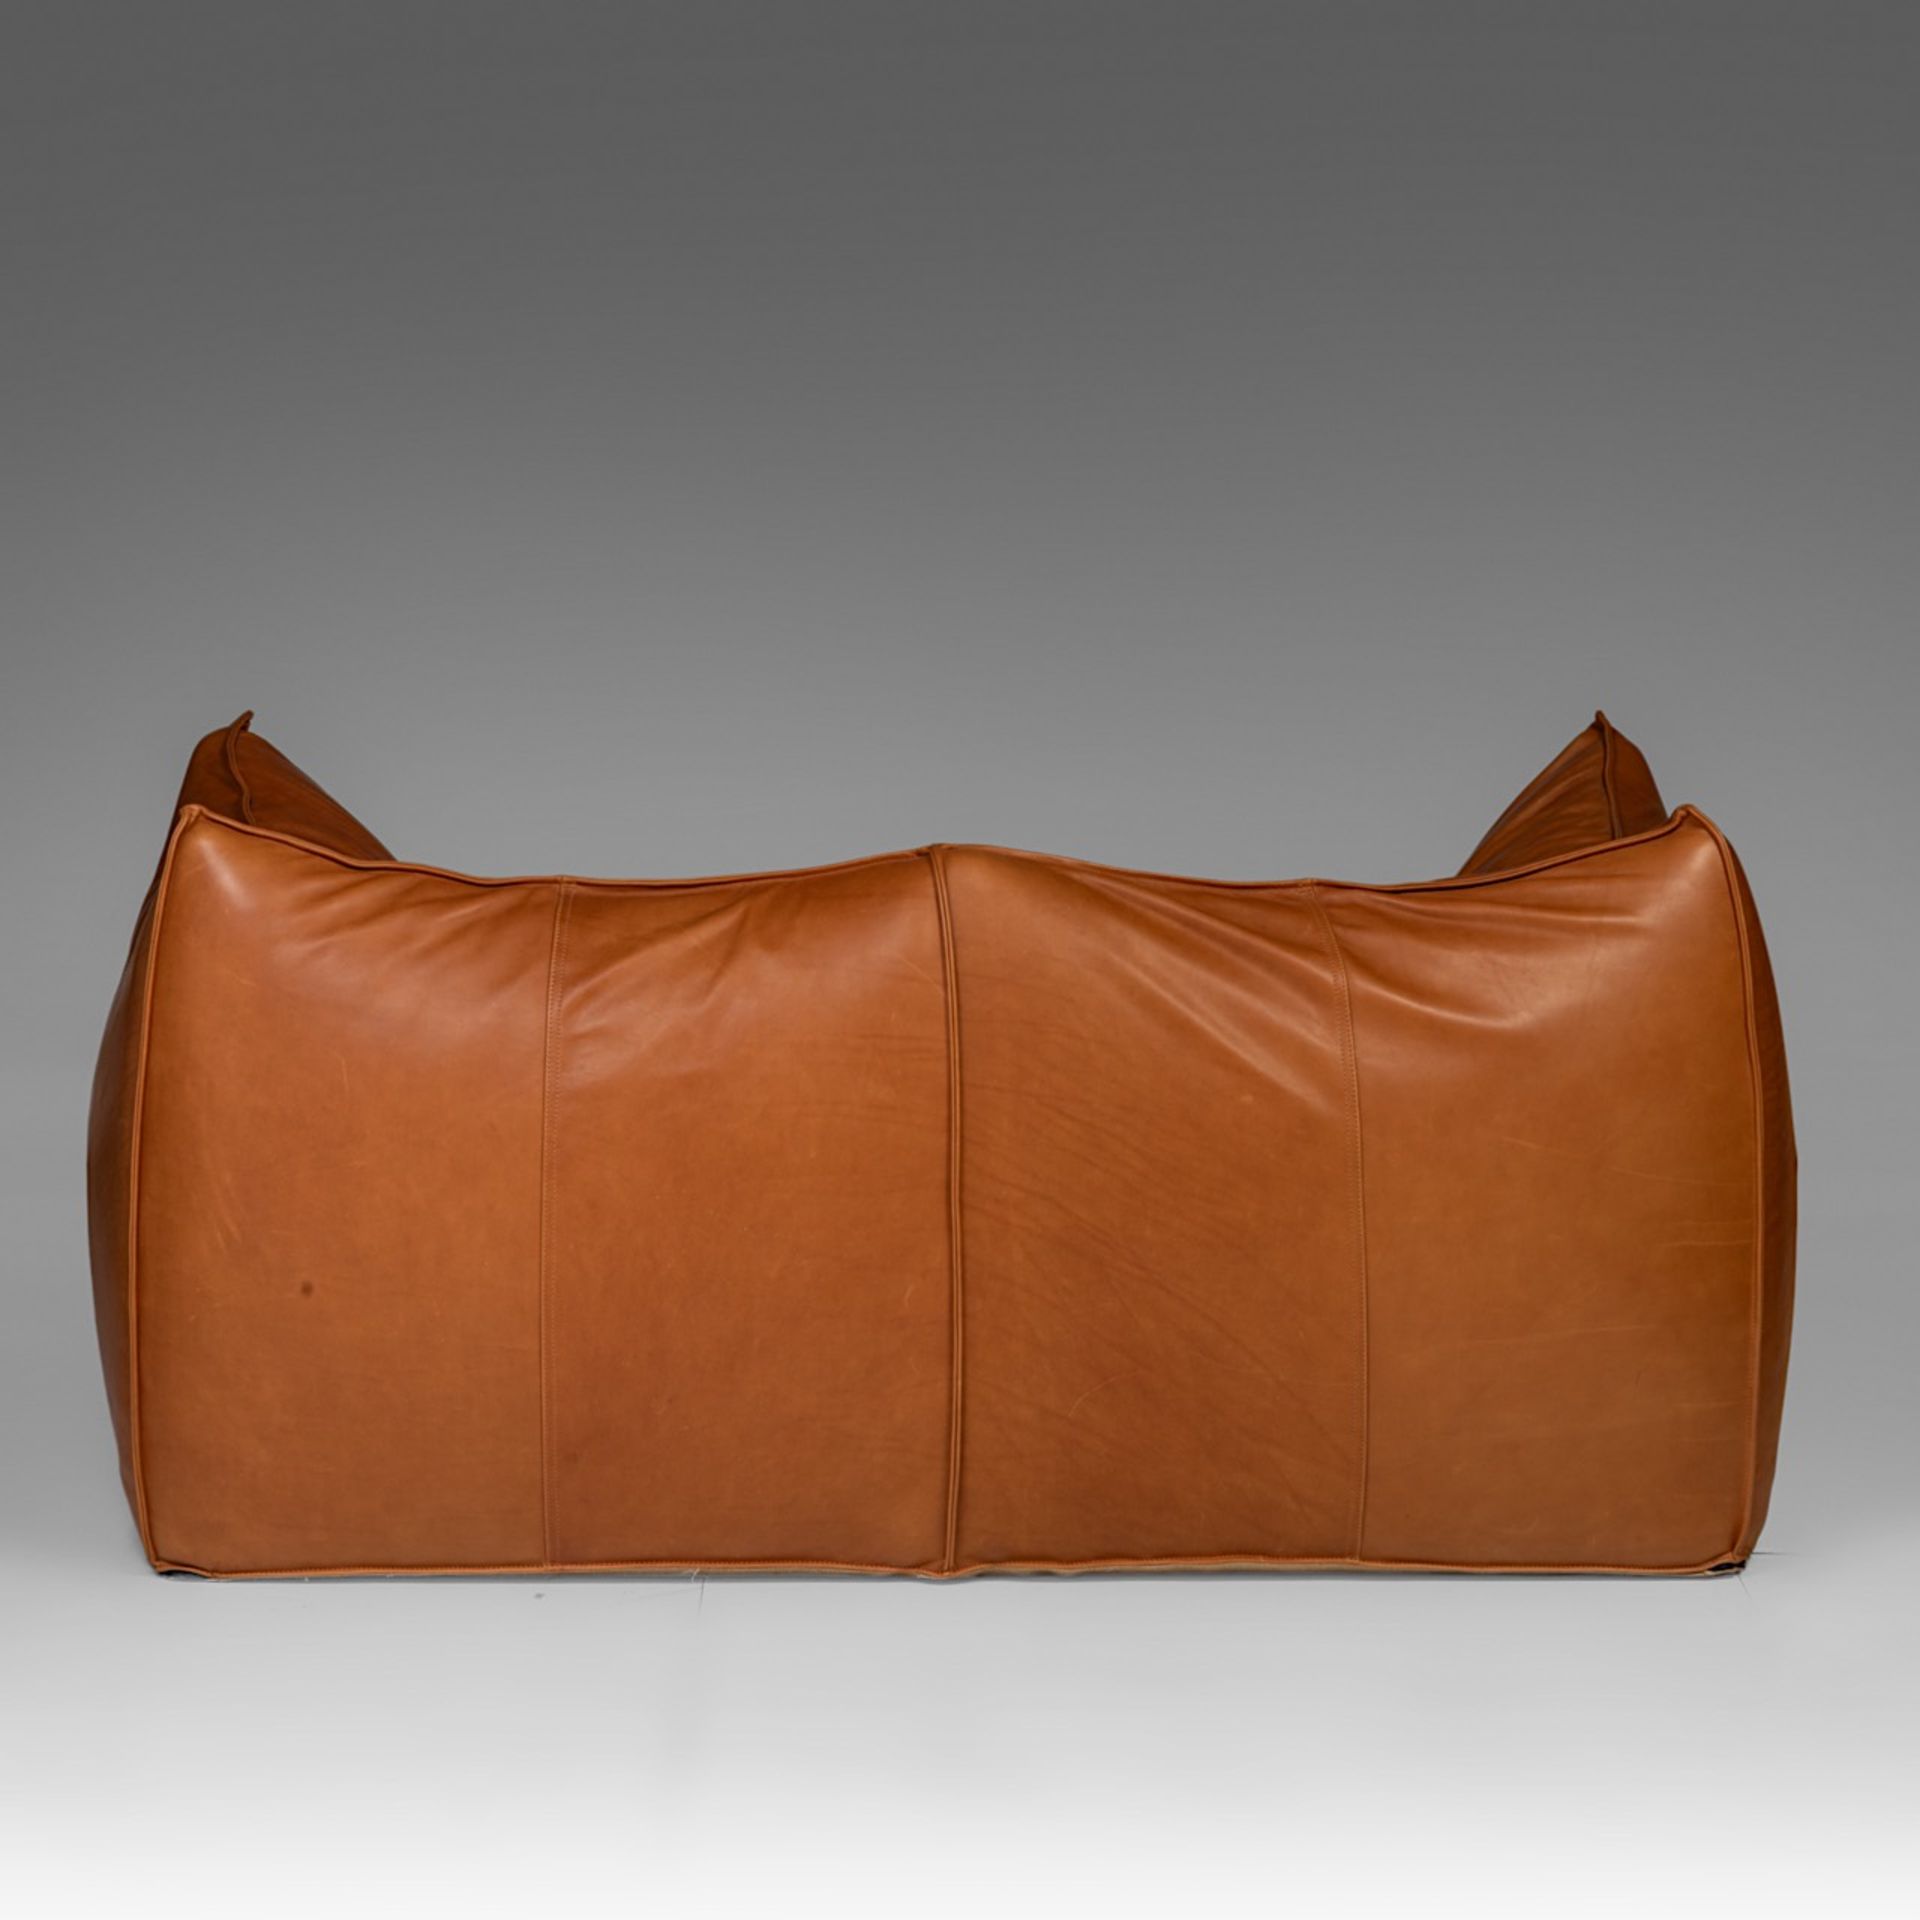 A Mario Bellini 'Le Bambole' sofa for B&B Italia, H 74 - W 165 - D 80 cm - Image 5 of 9